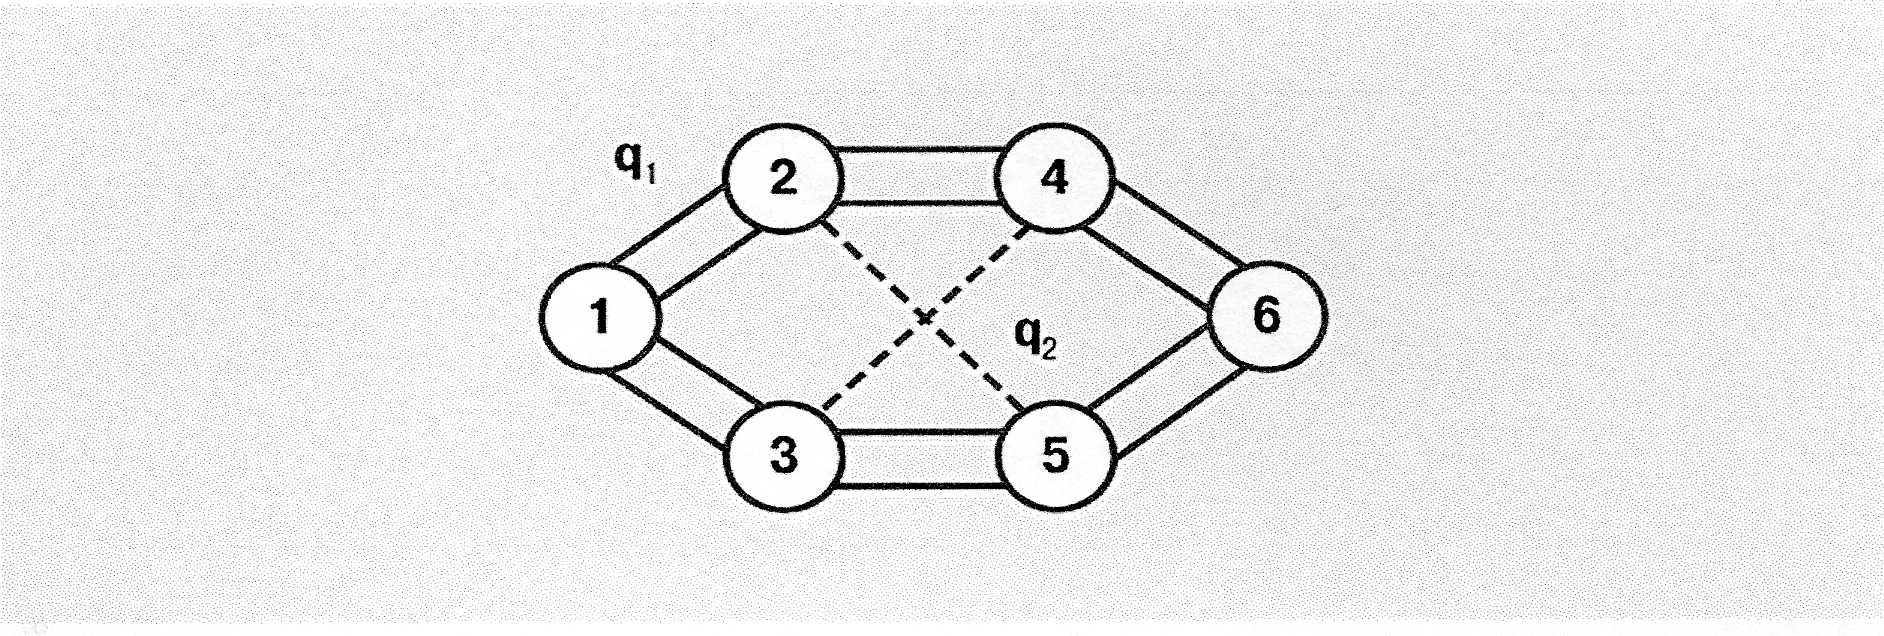 Топология сети Окс-7. Смежные вершины графа.